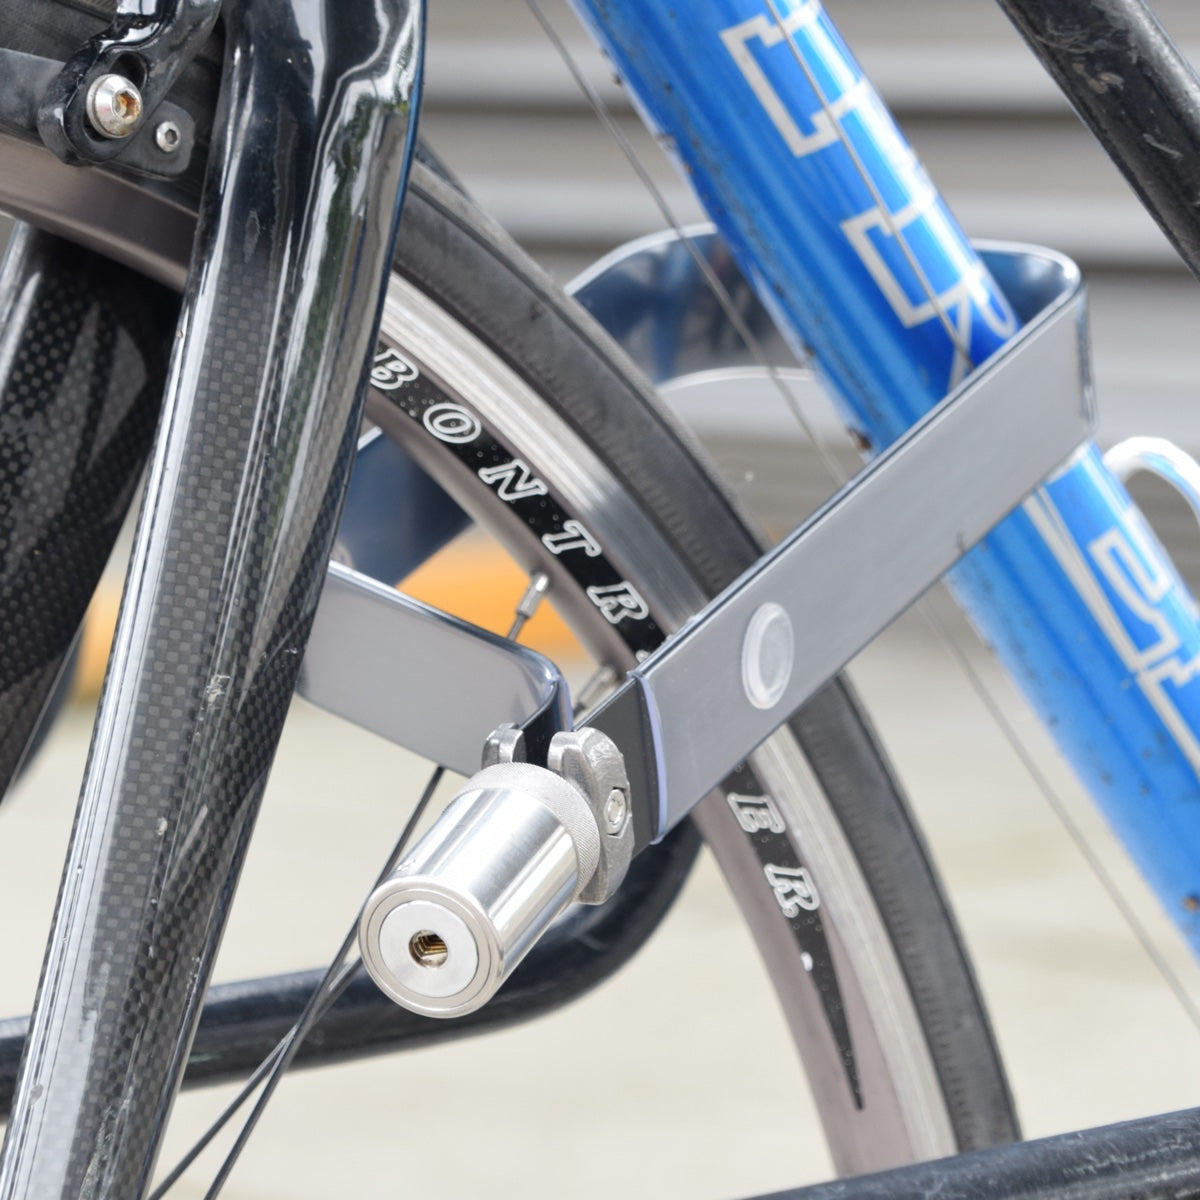 Keyed Alike Pair of TiGr mini+  – blue steel u-locks: strong, lightweight, certified bicycle security by TiGr Lock